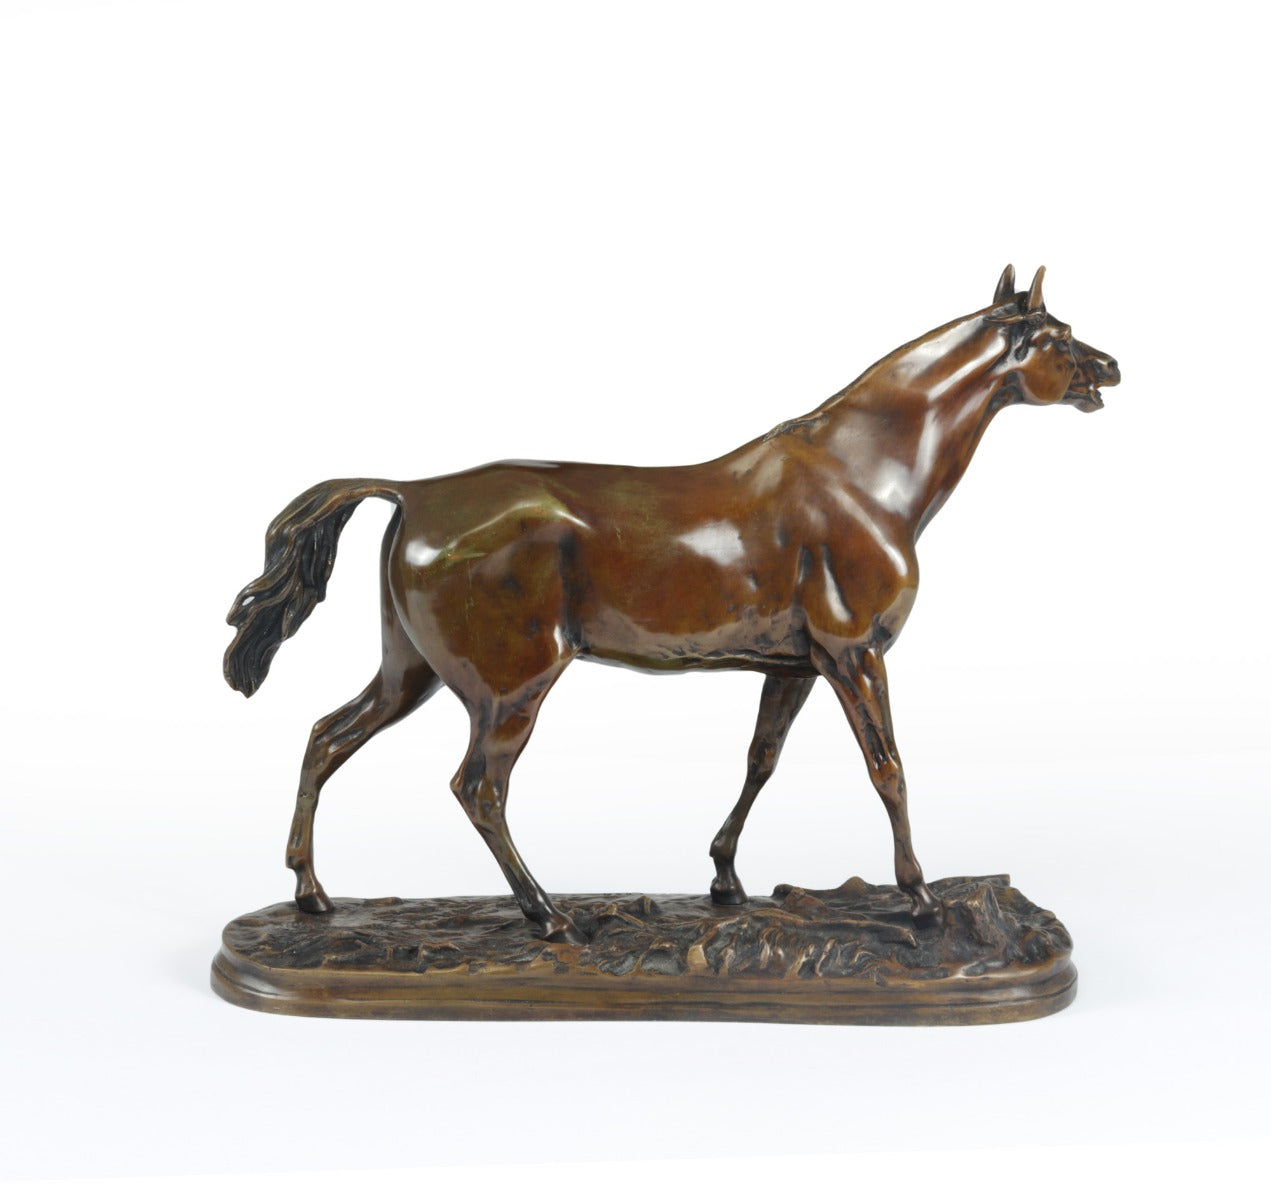 Bronze Horse Sculpture by Mene 1856